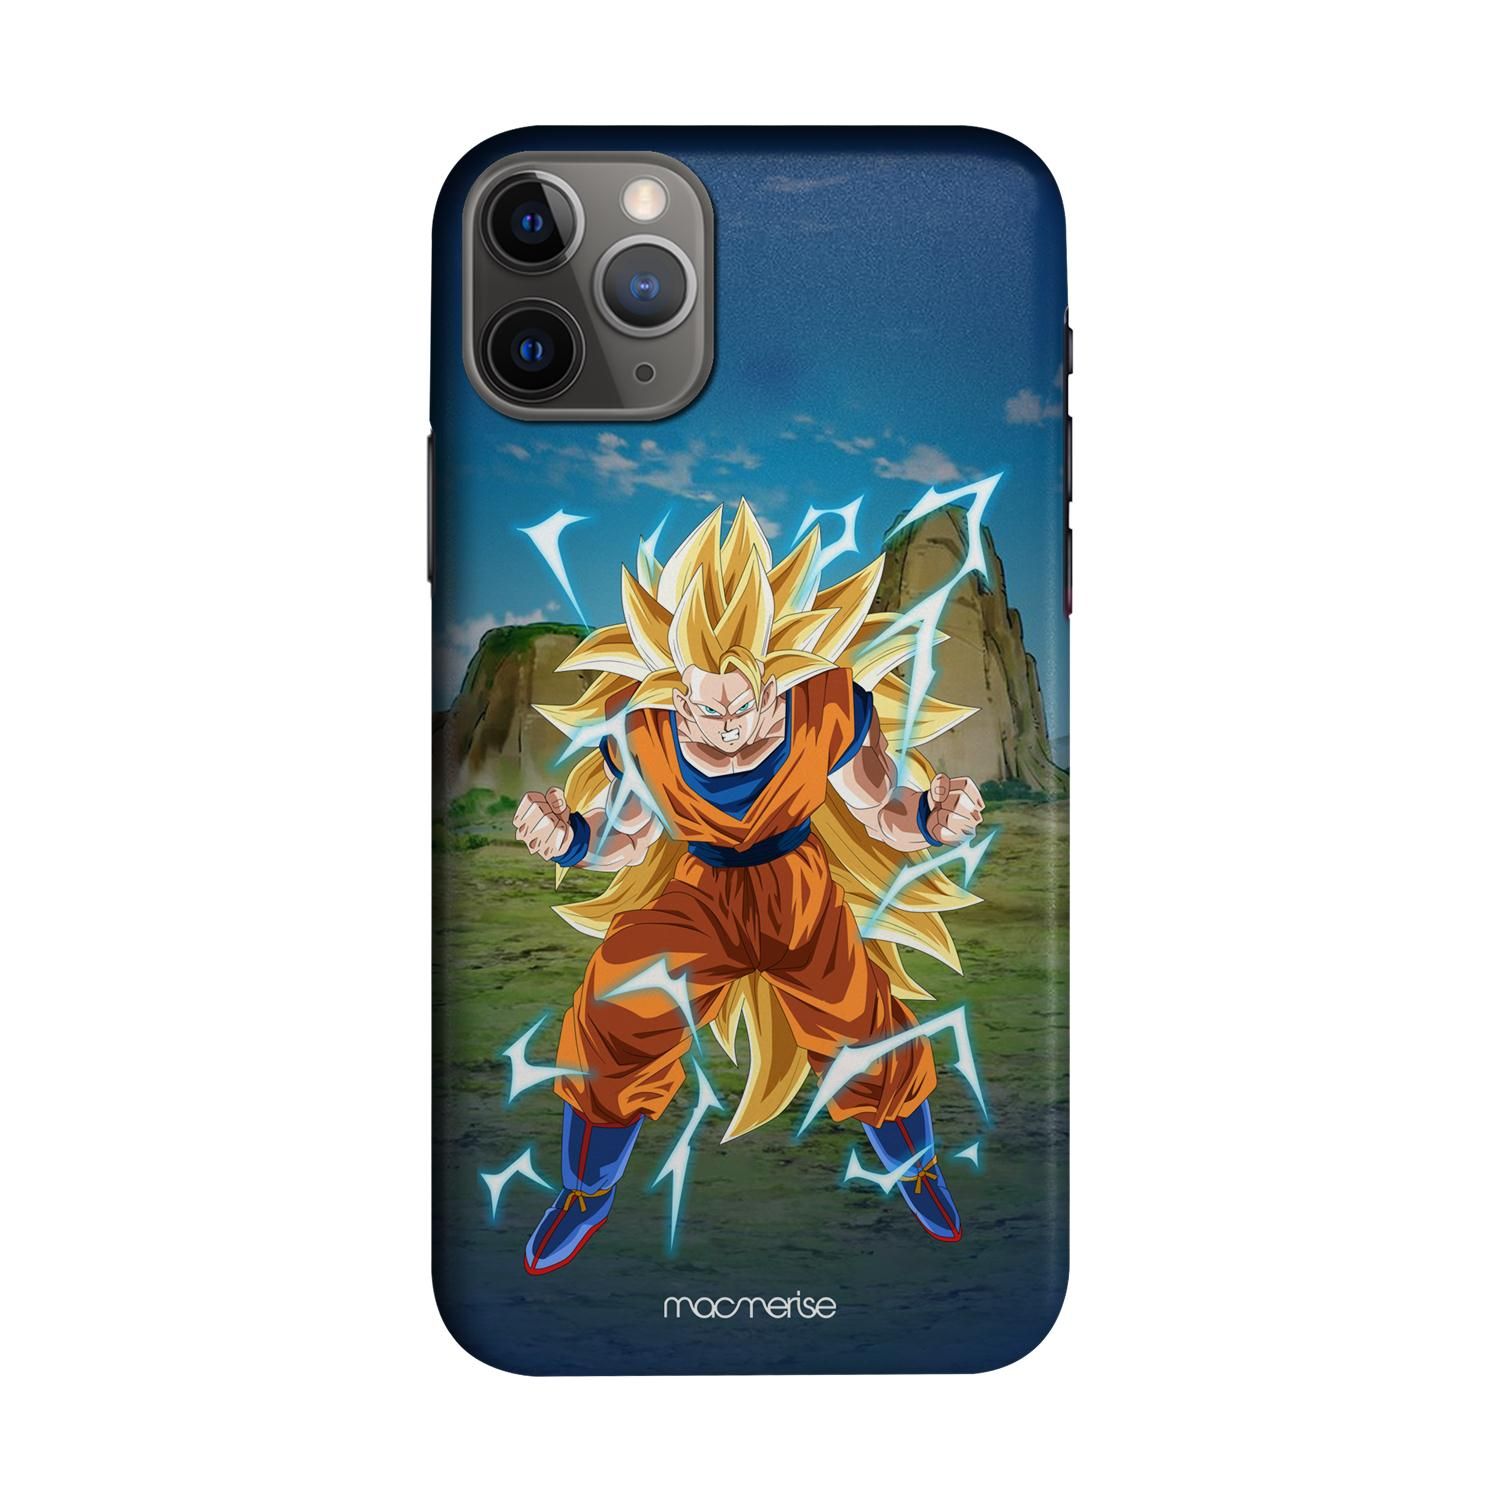 Buy SSJ3 Goku - Sleek Phone Case for iPhone 11 Pro Max Online